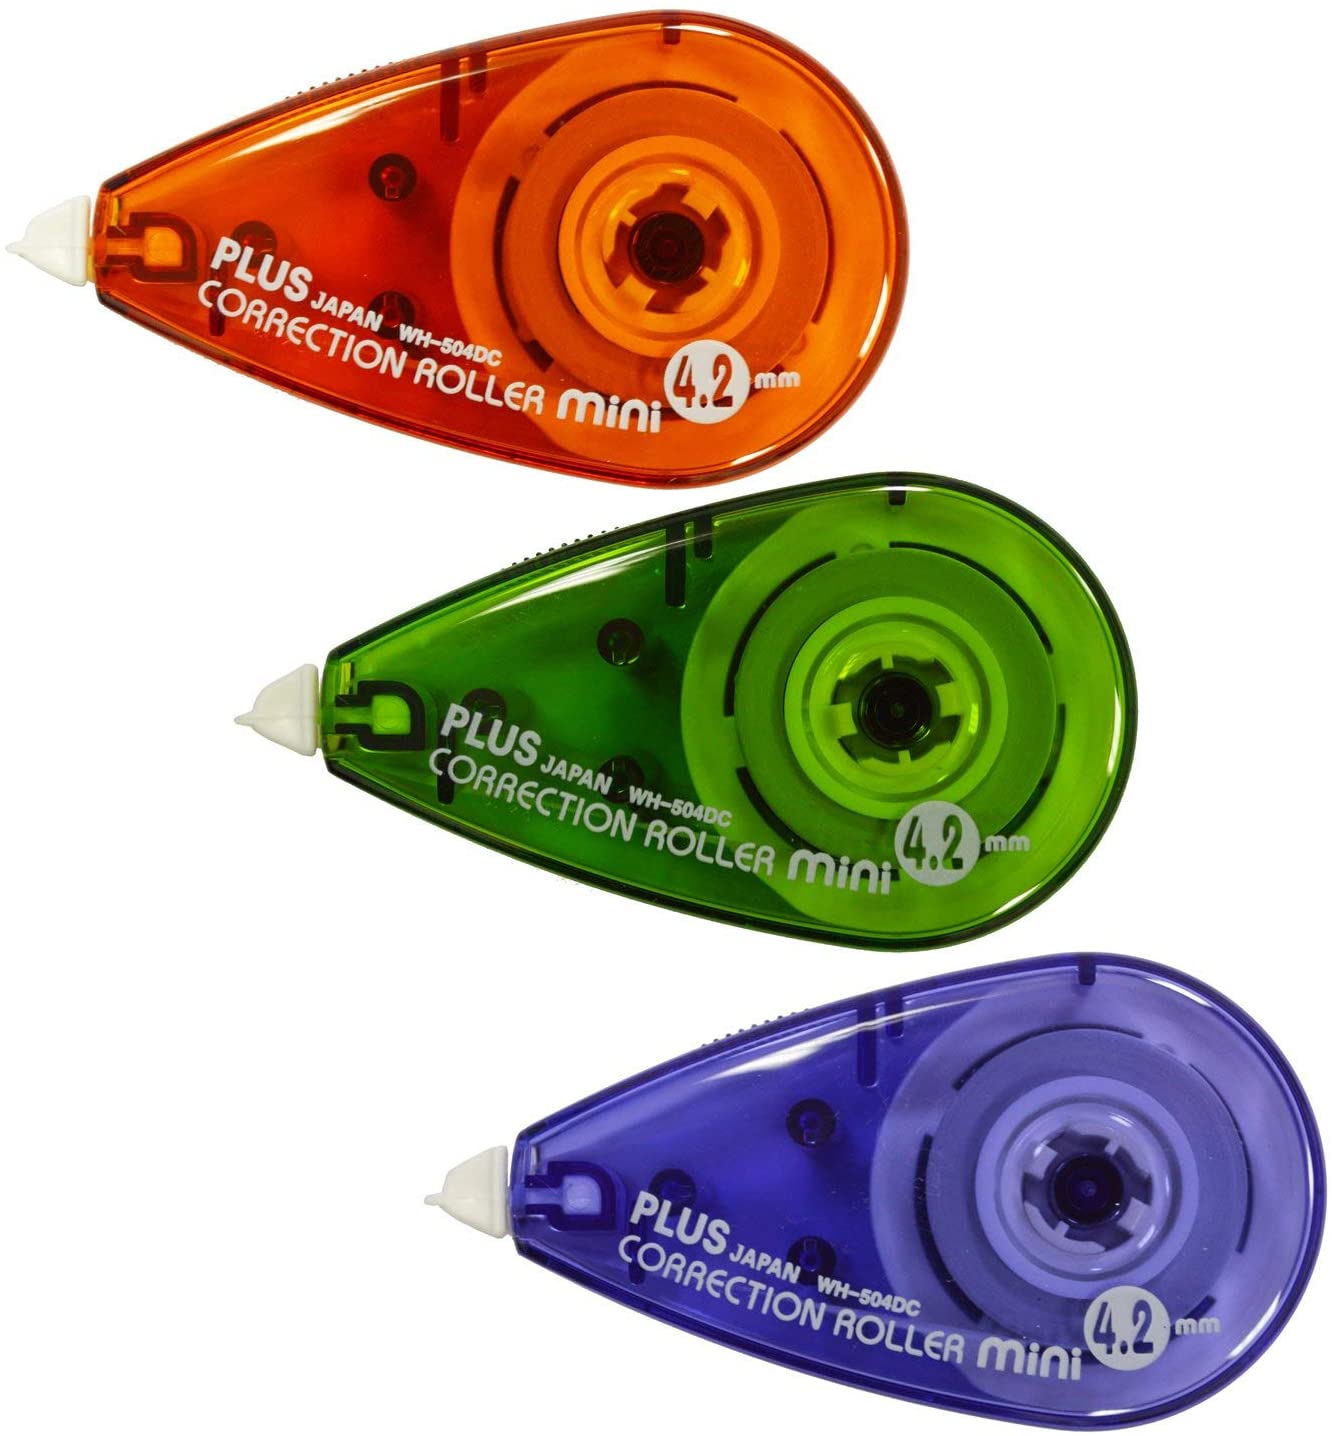 PLUS Japan correttore roller mini 2+1 gratis, 6 m x 4,2 mm